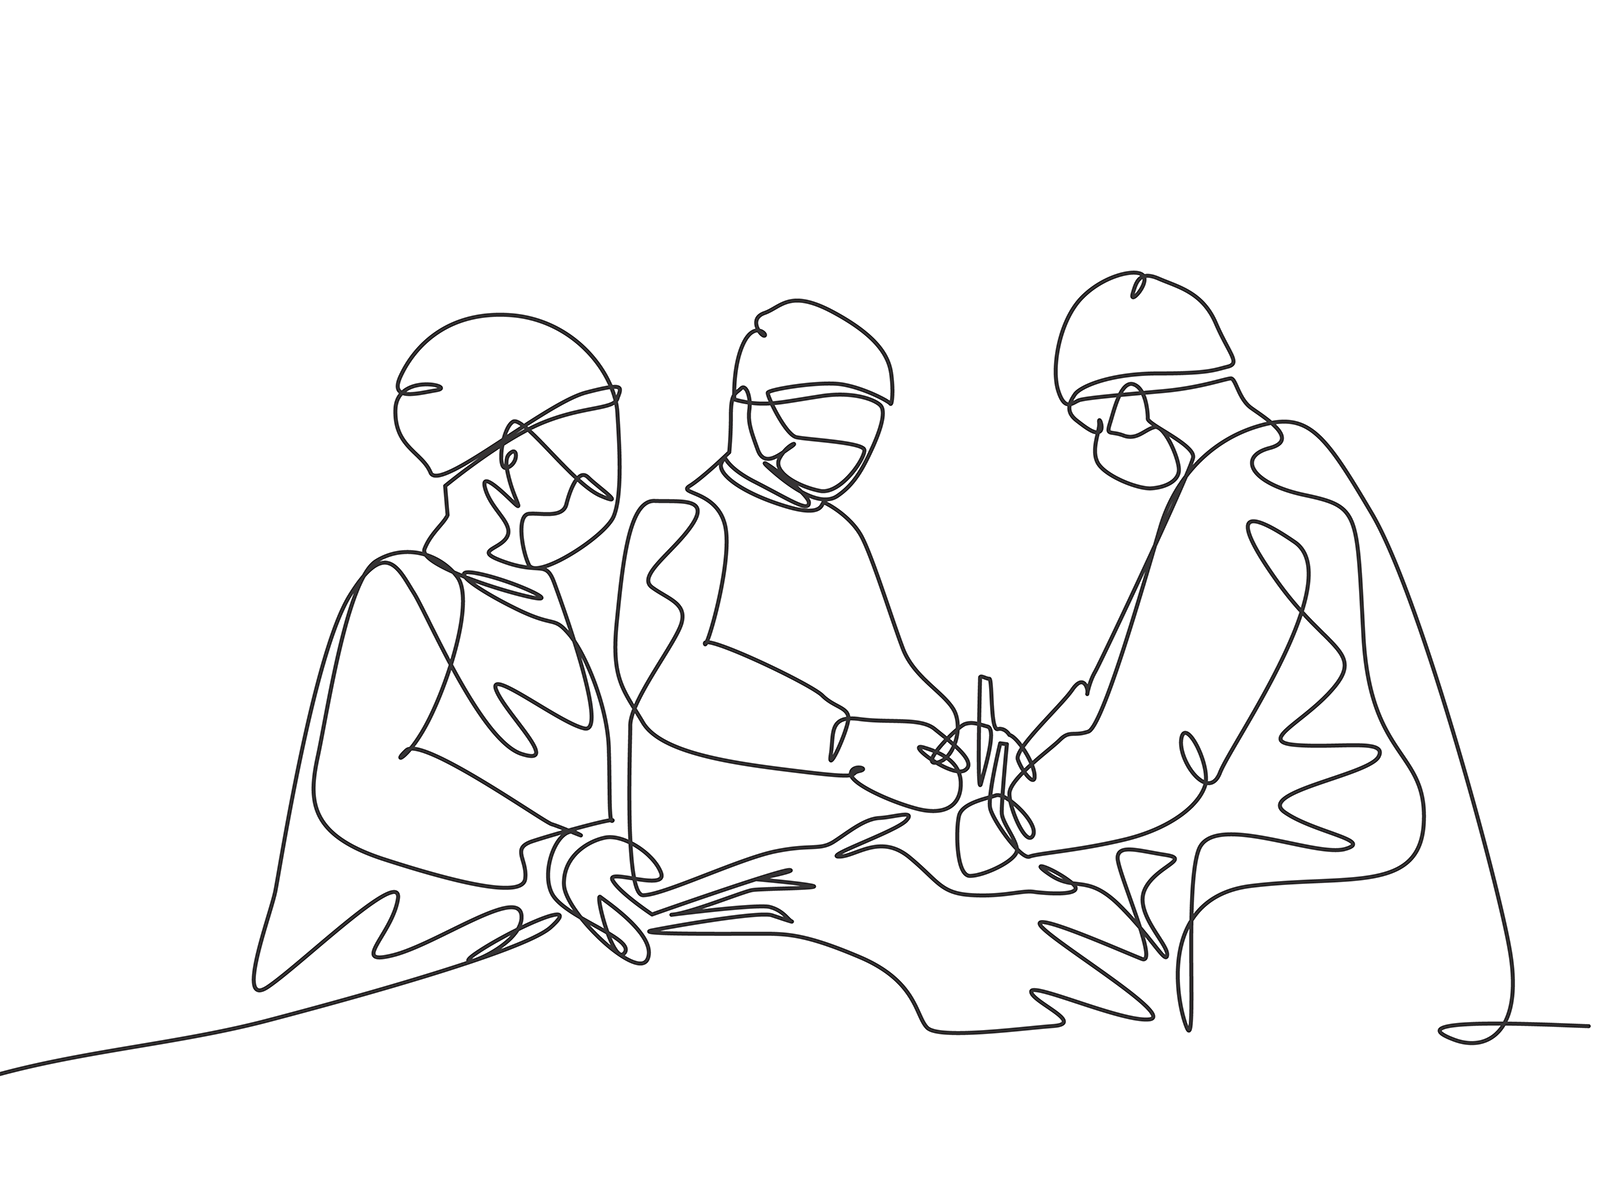 Surgery line-art